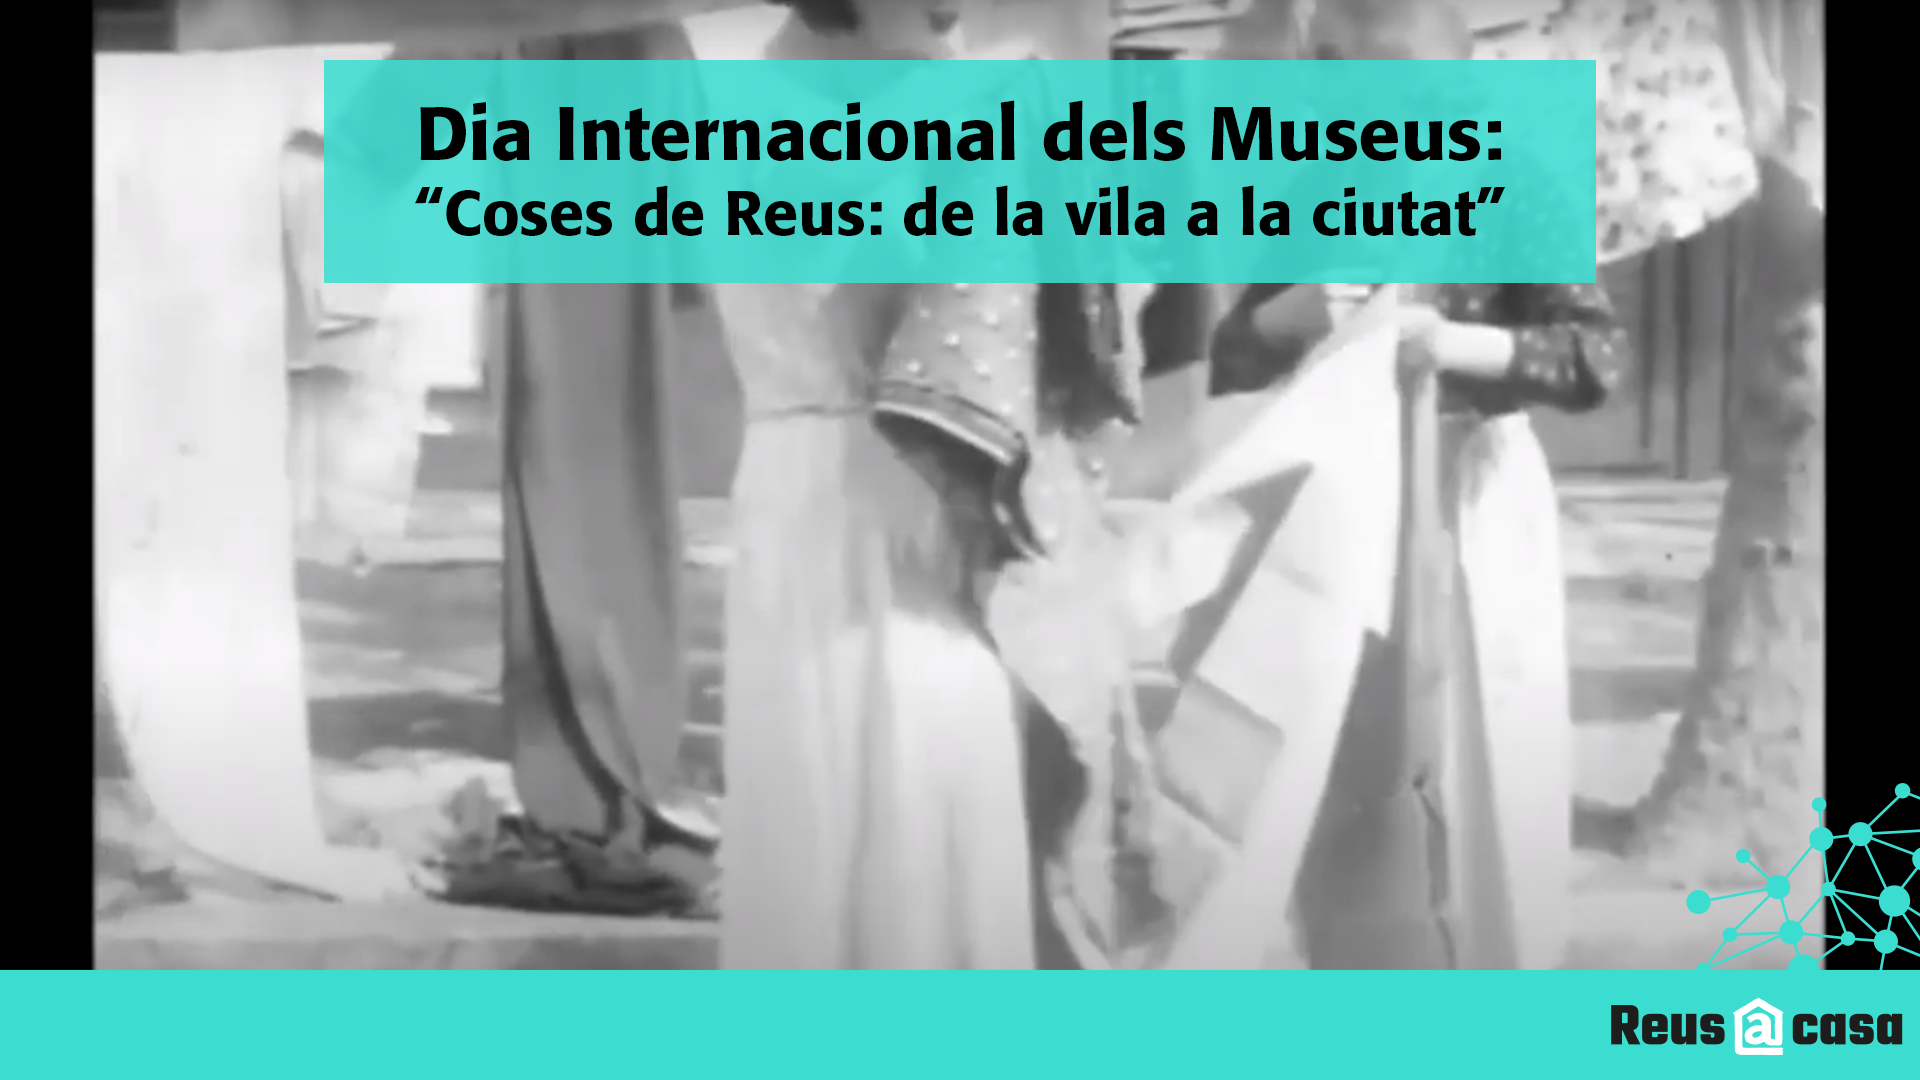 Dia Internacional dels Museus: Exposició Coses de Reus